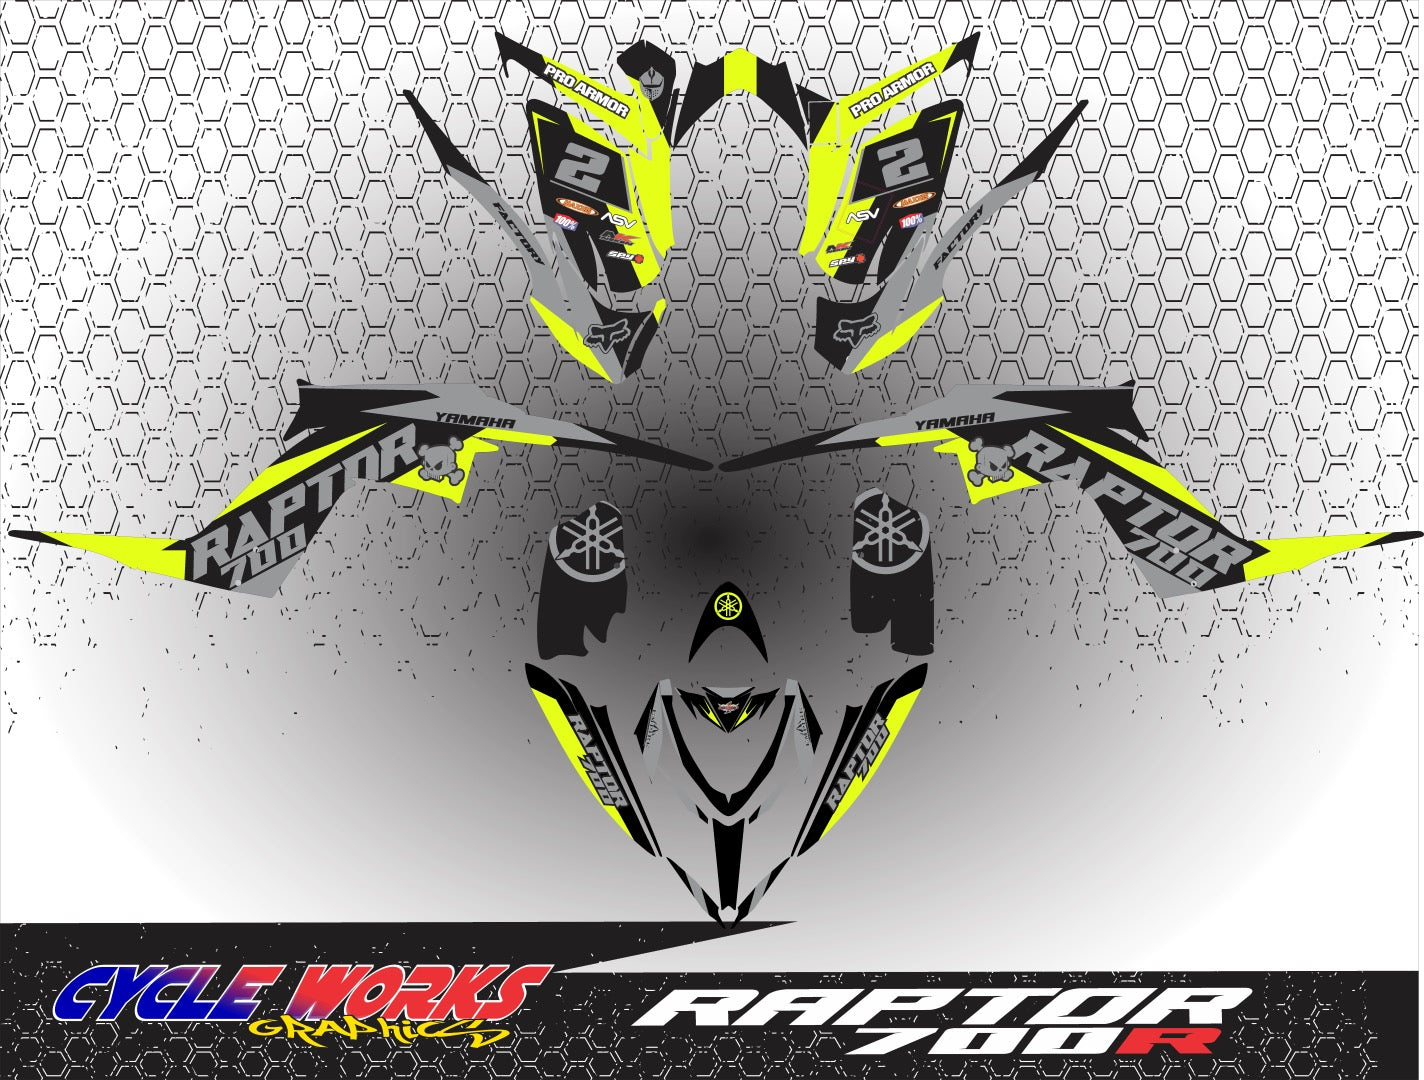 Raptor 700 full graphics  kit